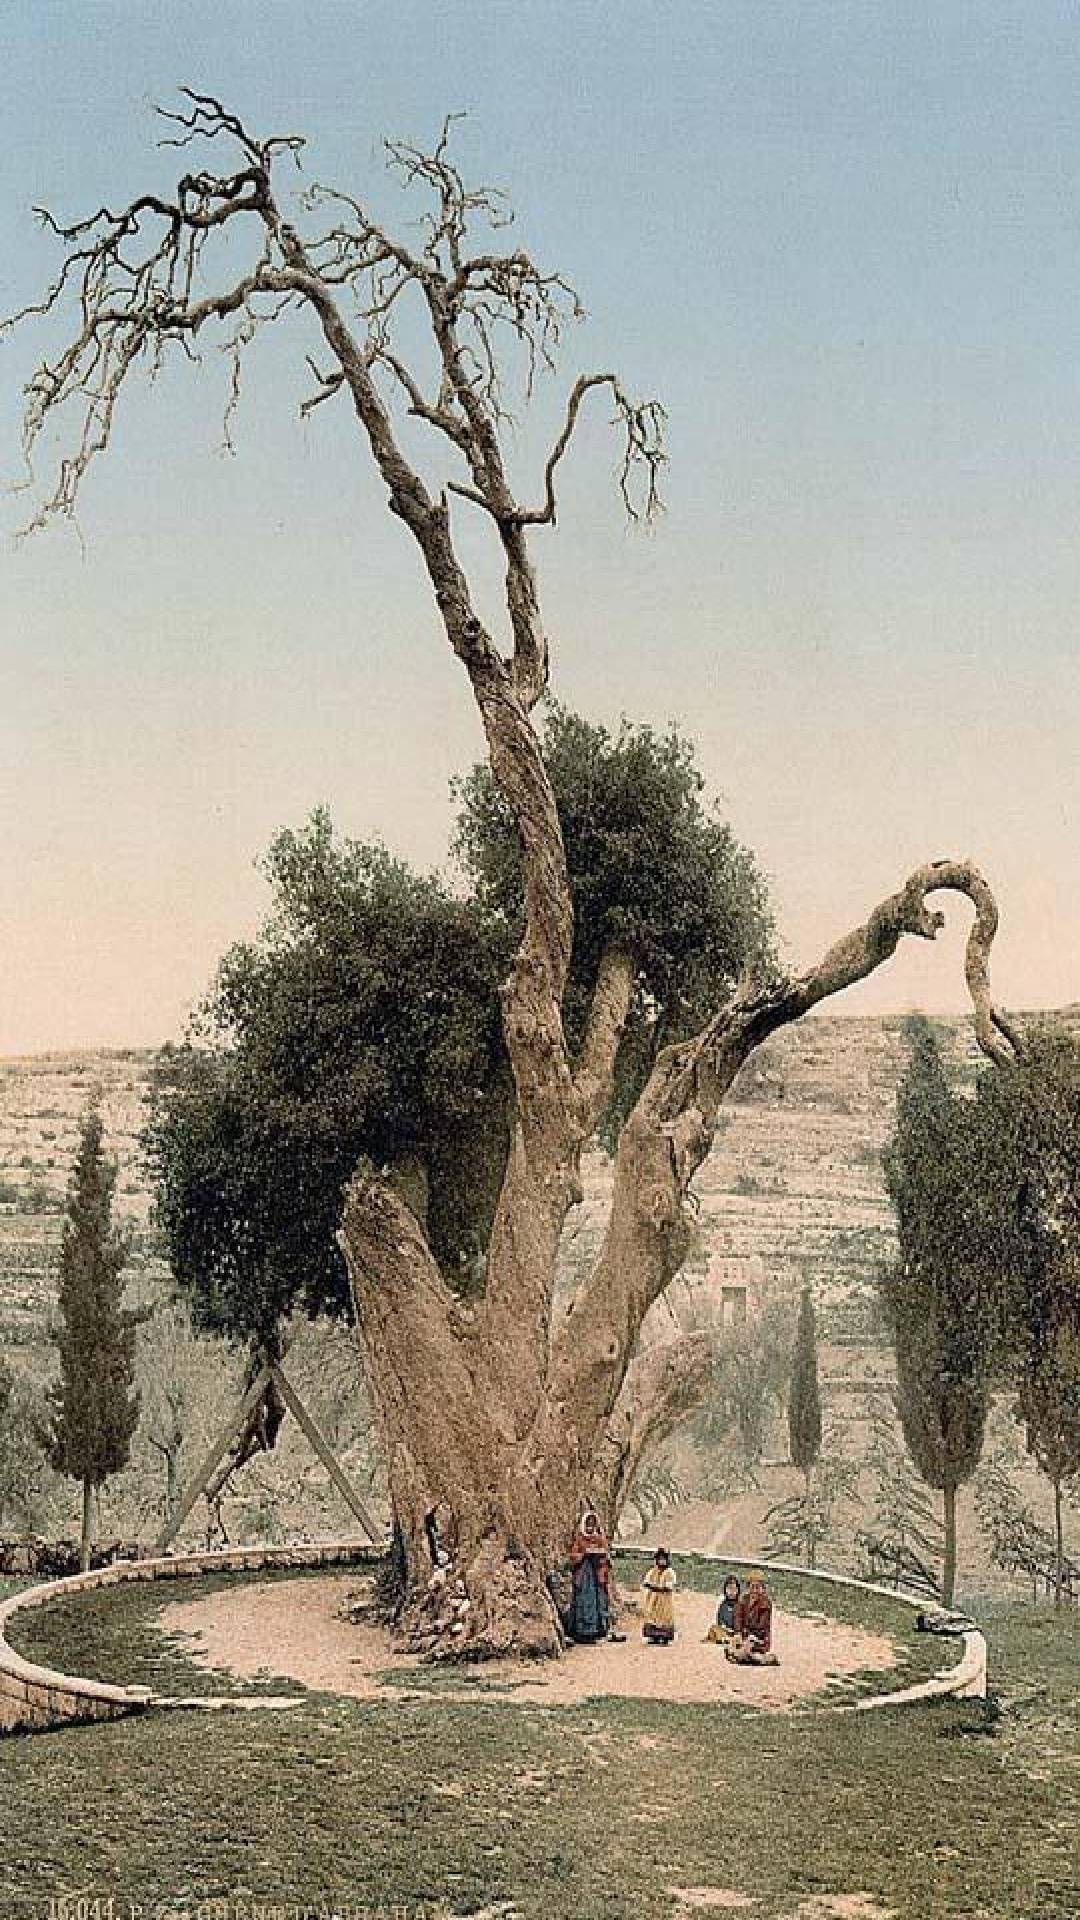  Снимка на Дъба на Авраам в Палестина, направена около 1900 г.